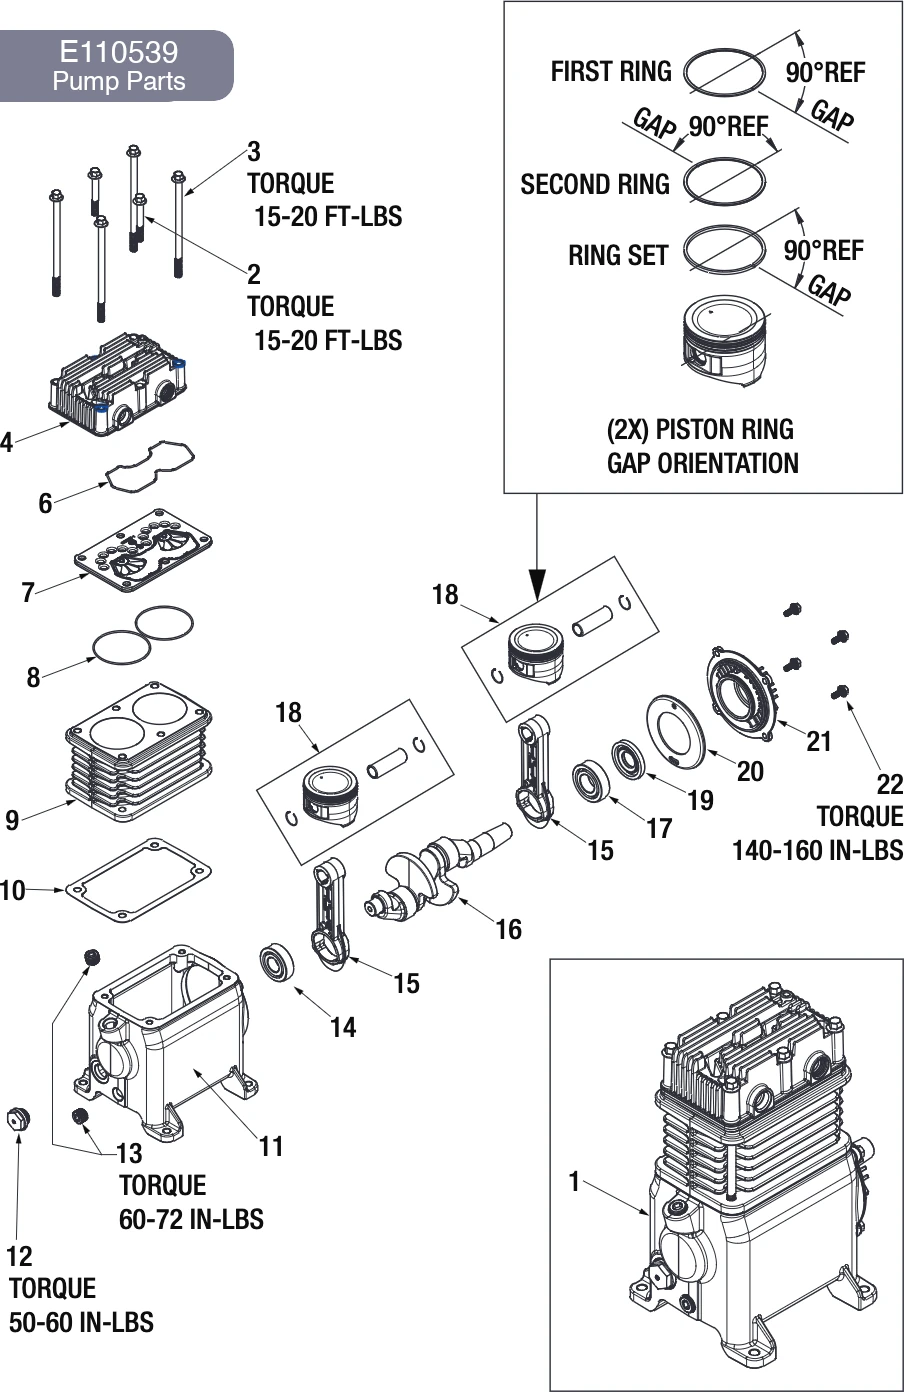 Pump E110539 Parts ( DXCM251 and DXCM601 )